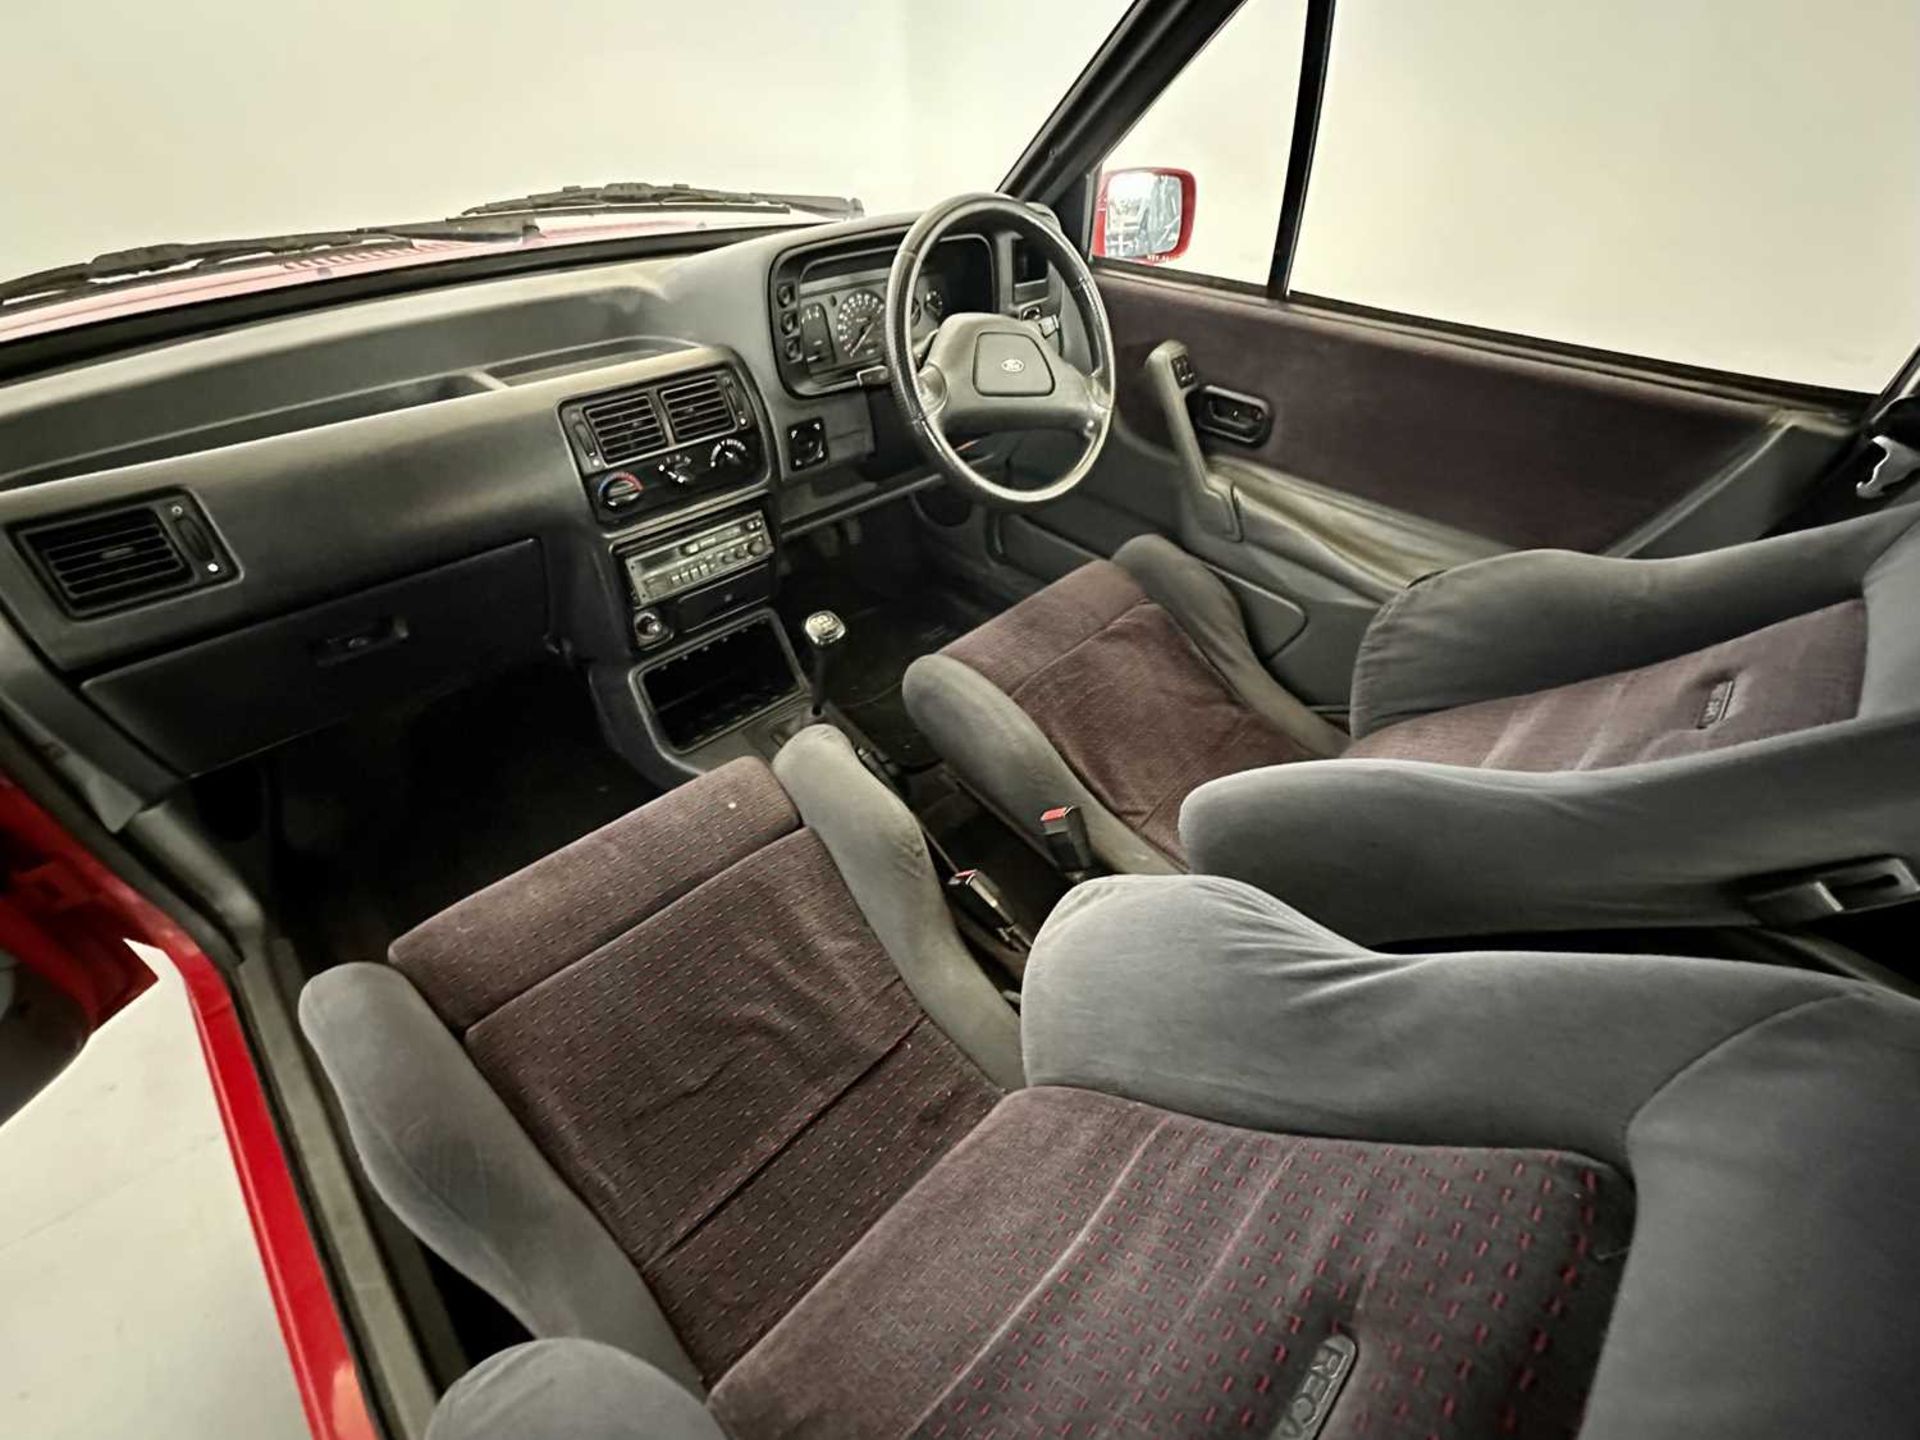 1987 Ford Escort XR3i Cabriolet - Image 26 of 32